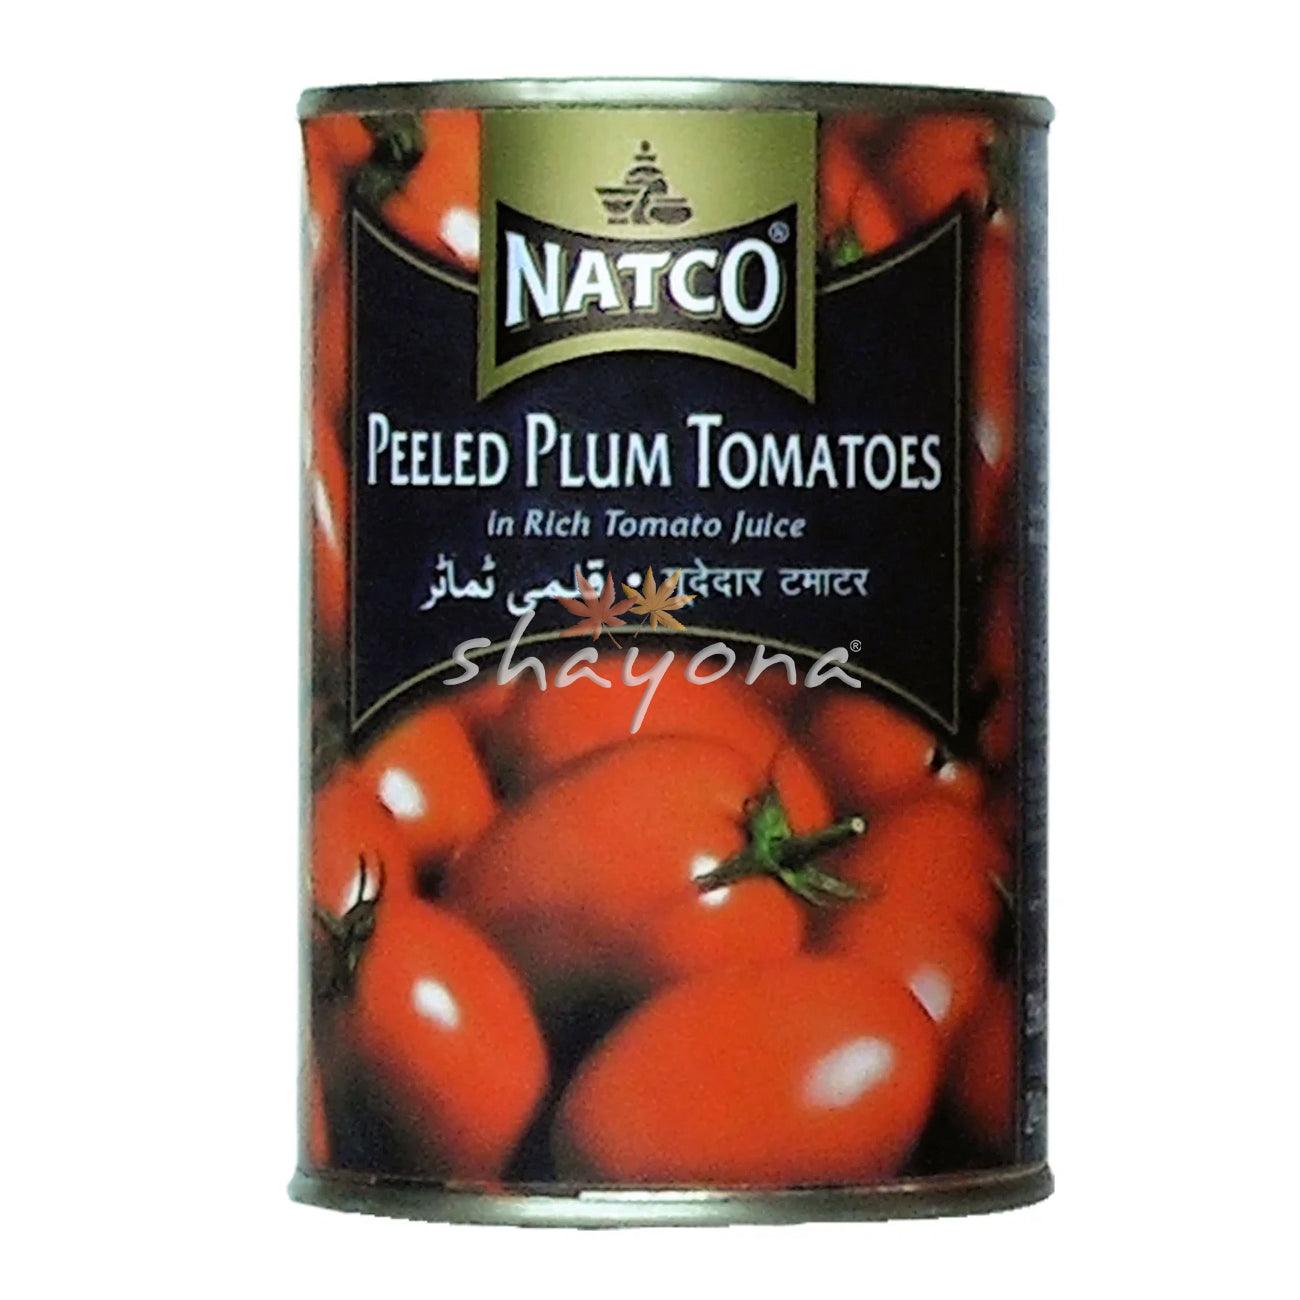 Natco Peeled Plum Tomatoes - Shayona UK